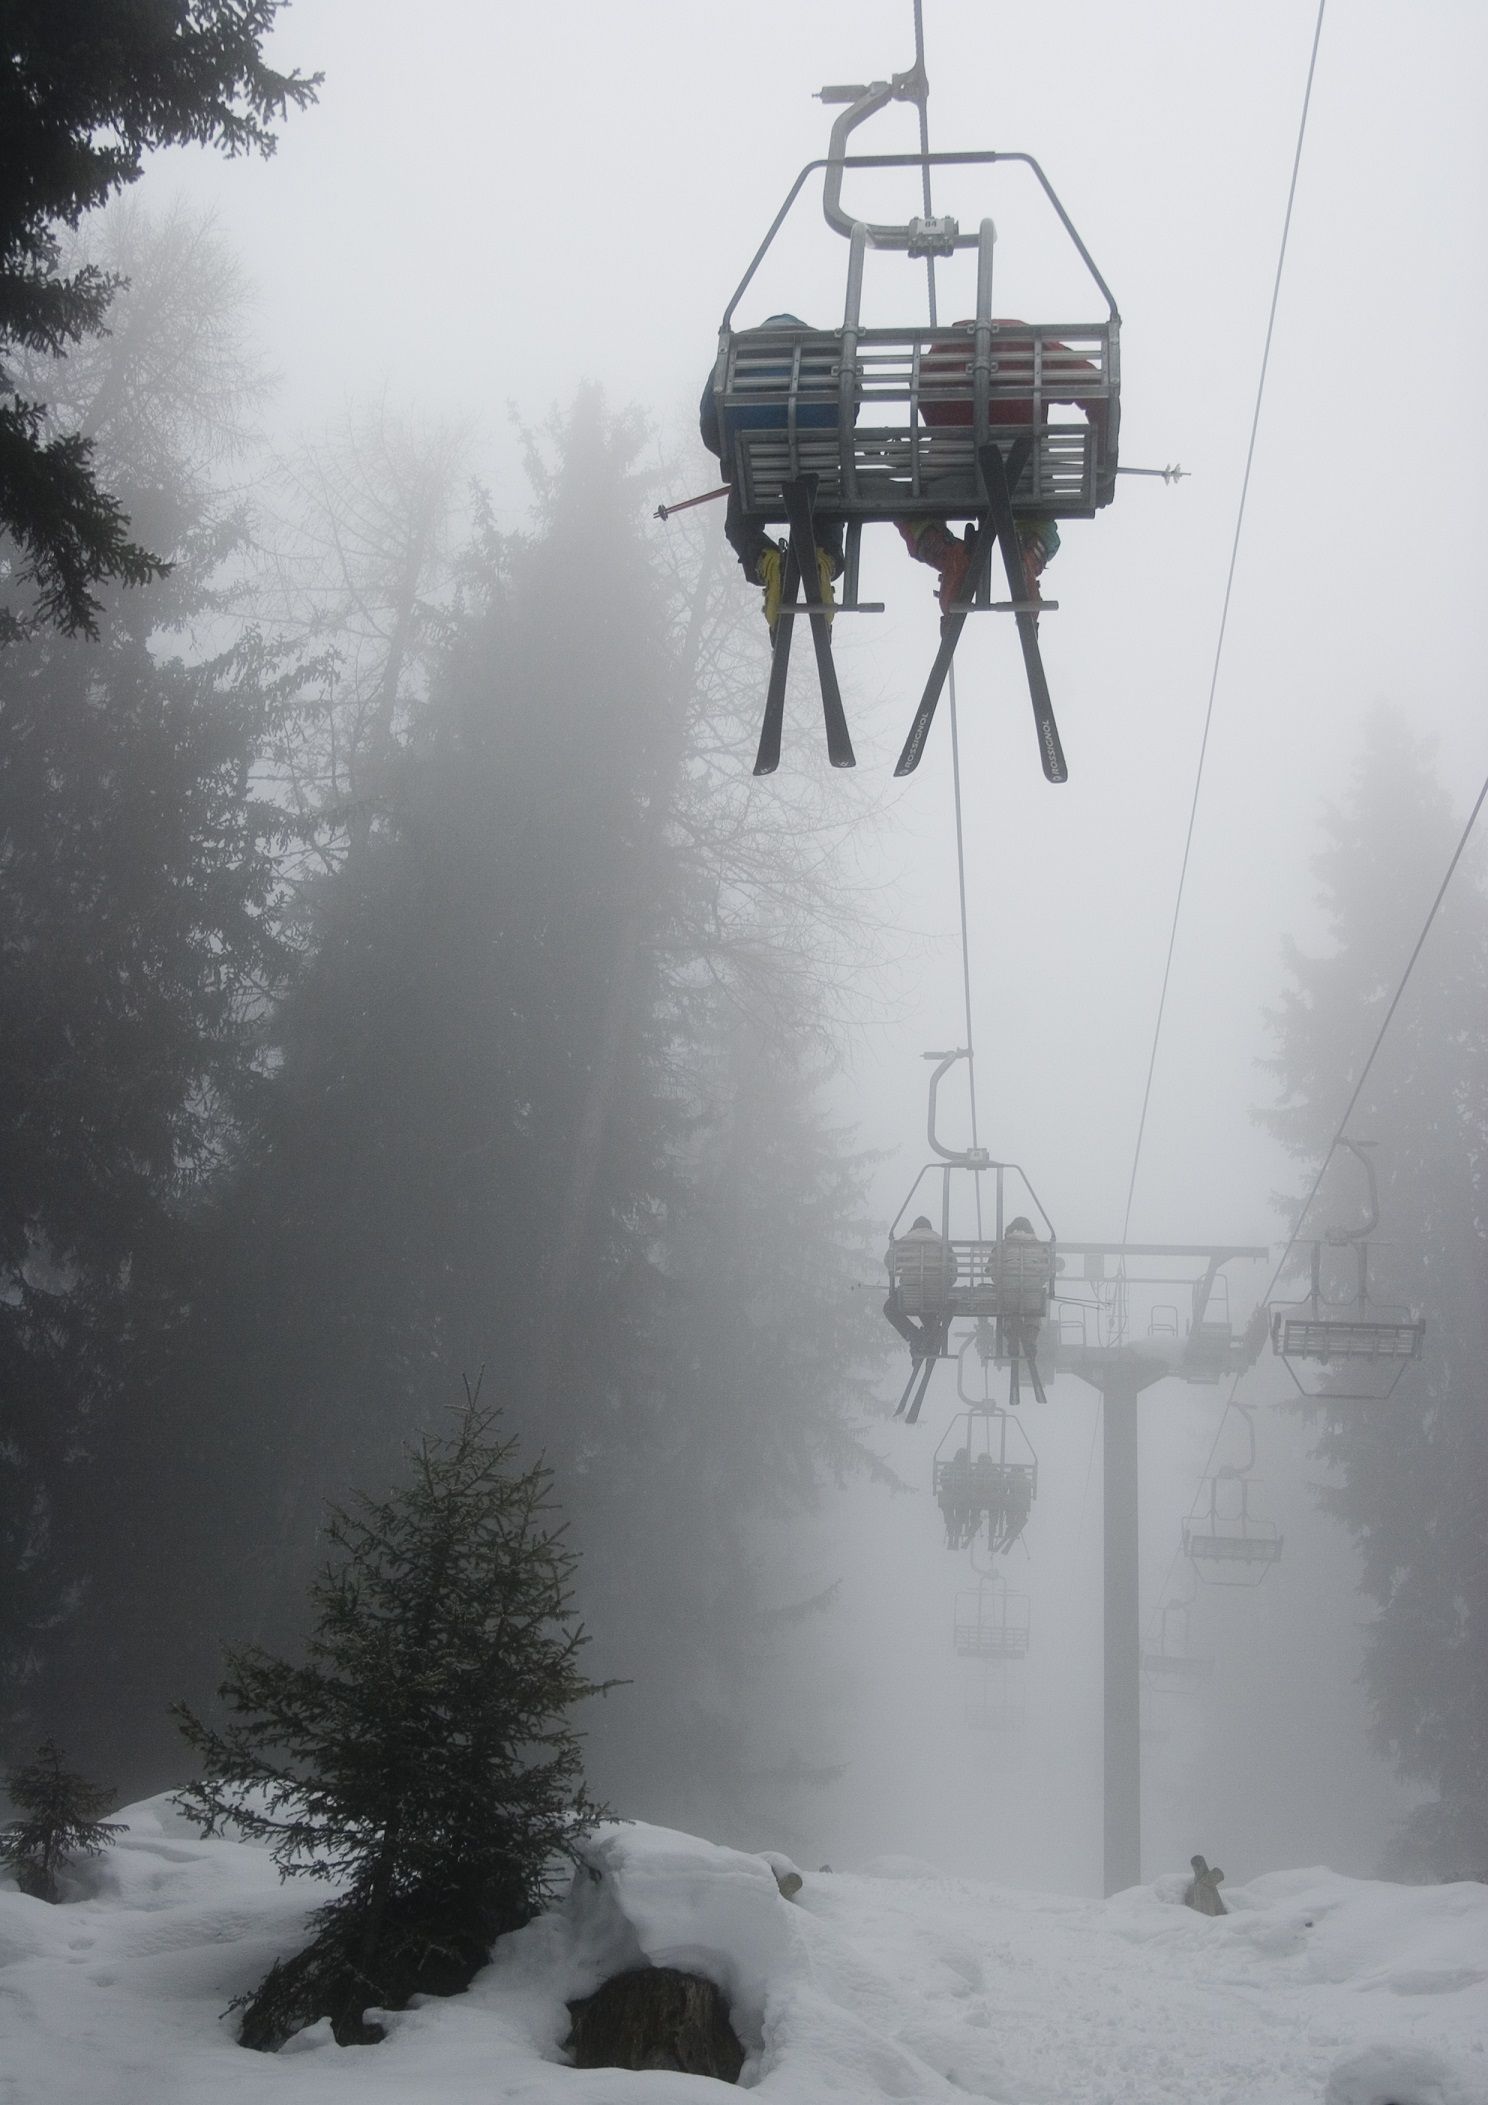 Skiers on a ski lift on a misty day.